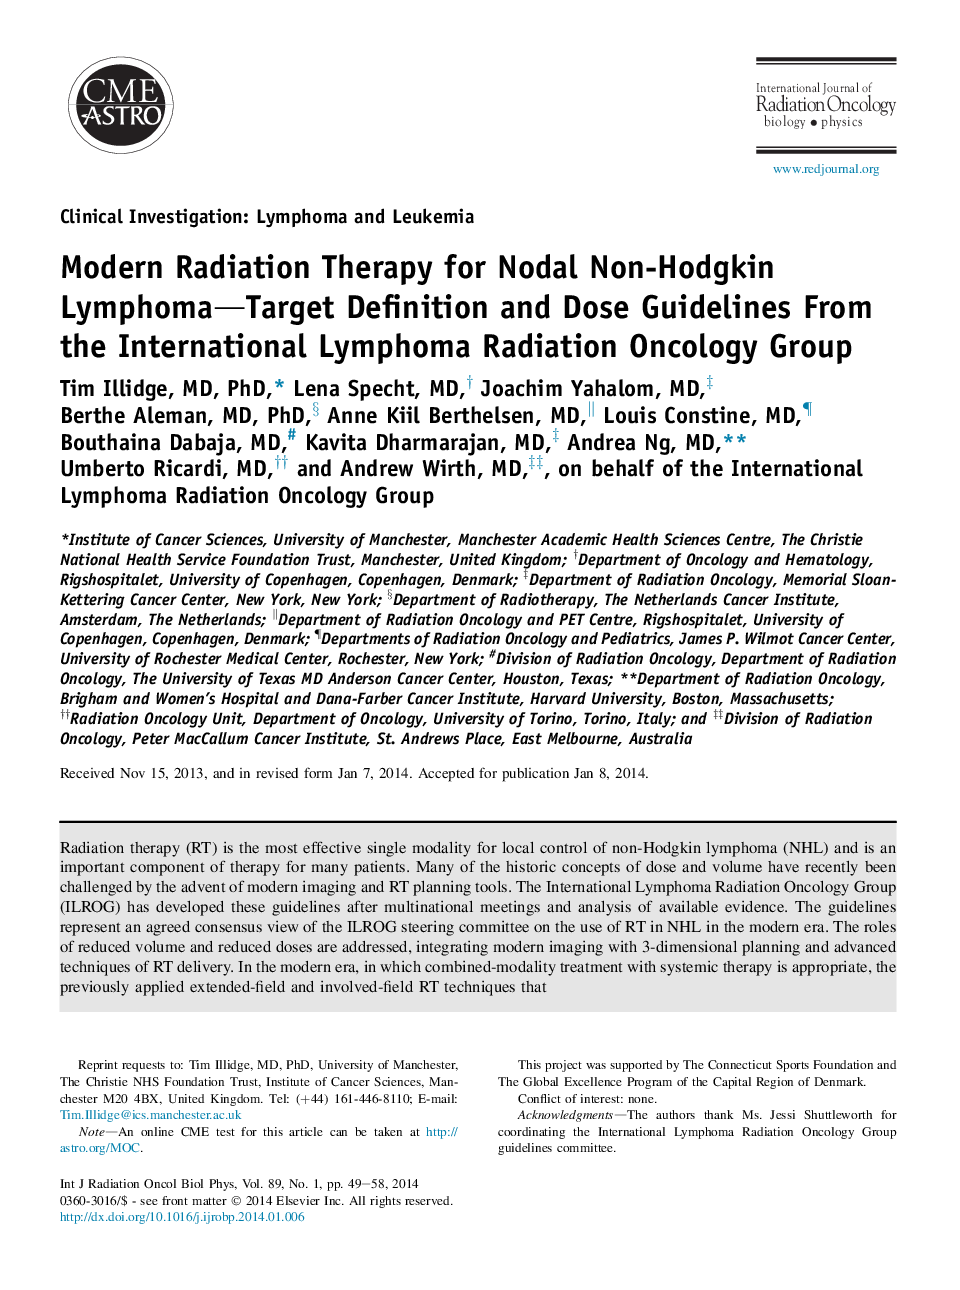 درمان رادیوتراپی مدرن برای تعیین لنفوم غیر لنفوم طبیعی و دستورالعمل های انتزاعی از گروه انکولوژی تابش بین المللی لنفوم 